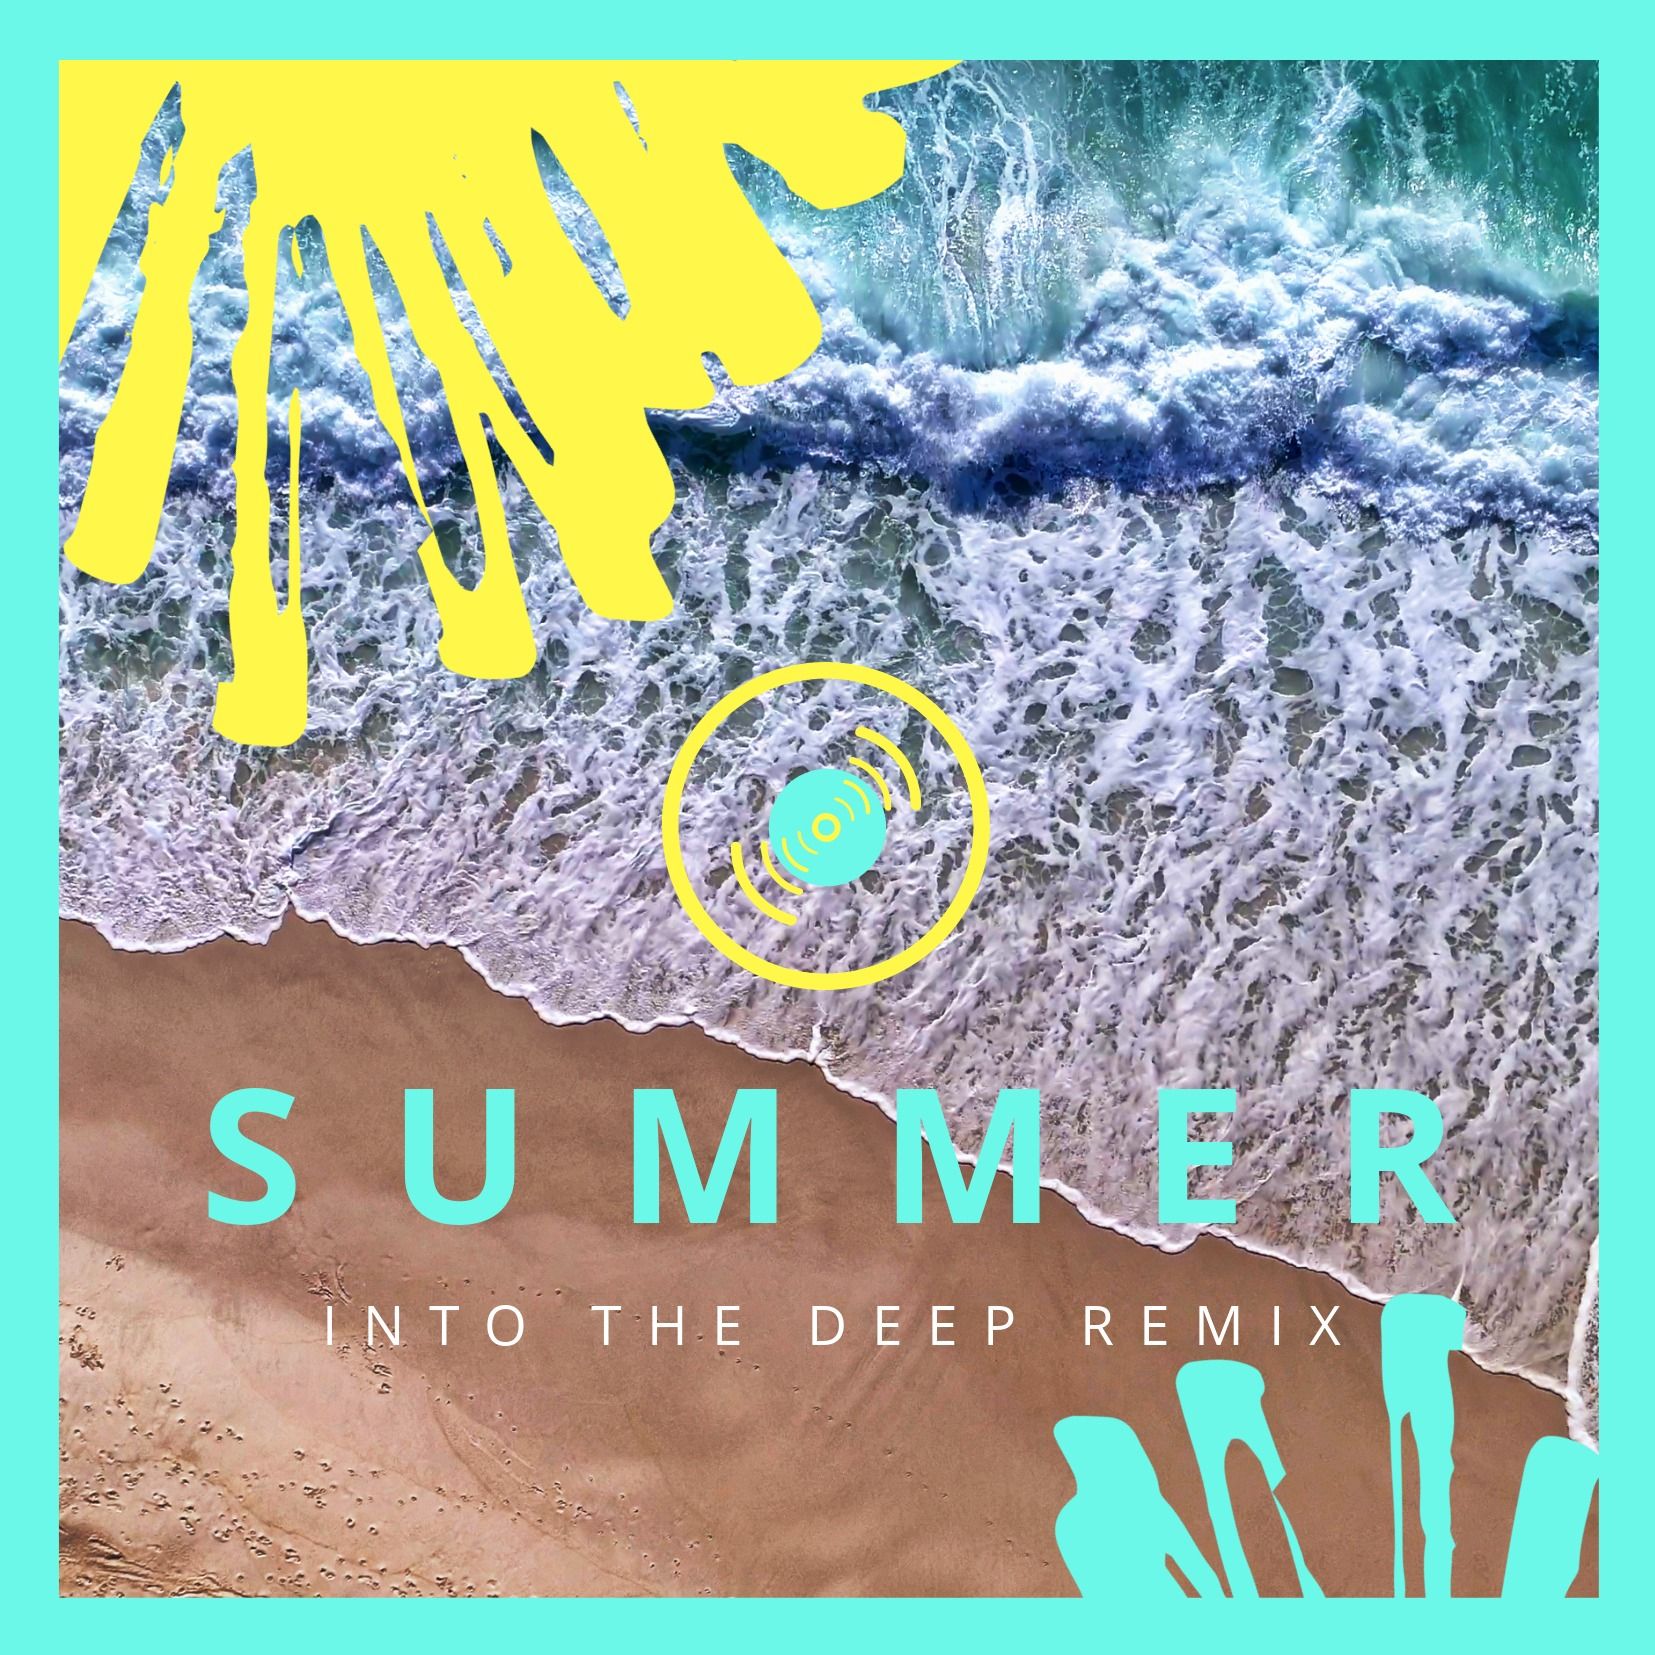 Diseño de pintura de verano sobre una playa con olas - Colores llamativos y brillantes en el diseño de portada del álbum - Imagen